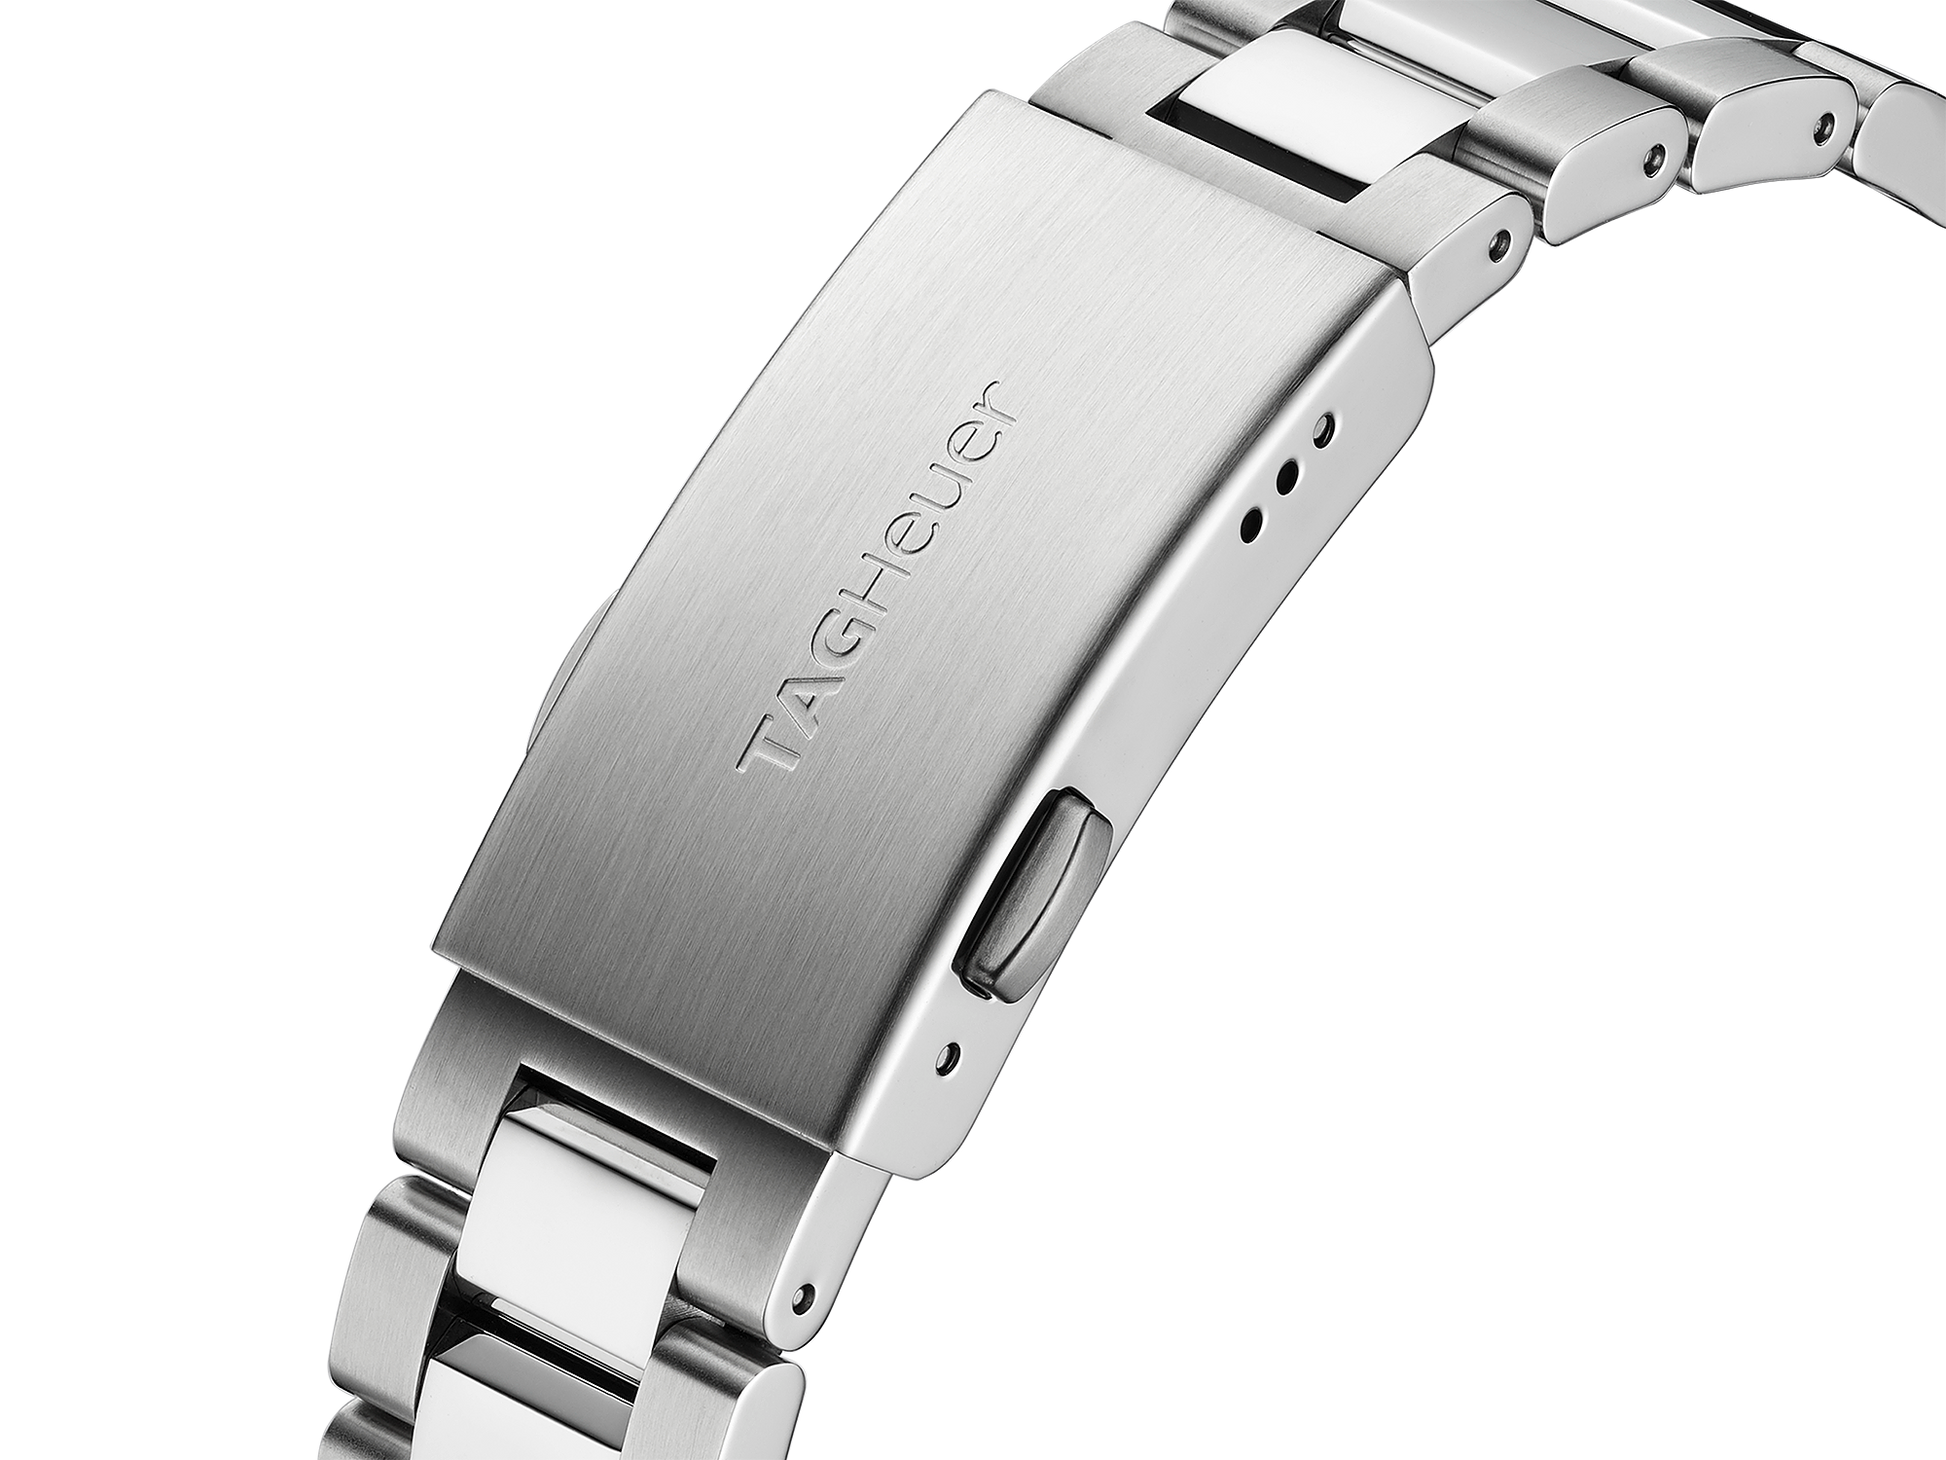 Buy Tag Heuer Aquaracer Blue Dial Silver Steel Strap Watch for Women - WAY131L.BA0748 in Pakistan